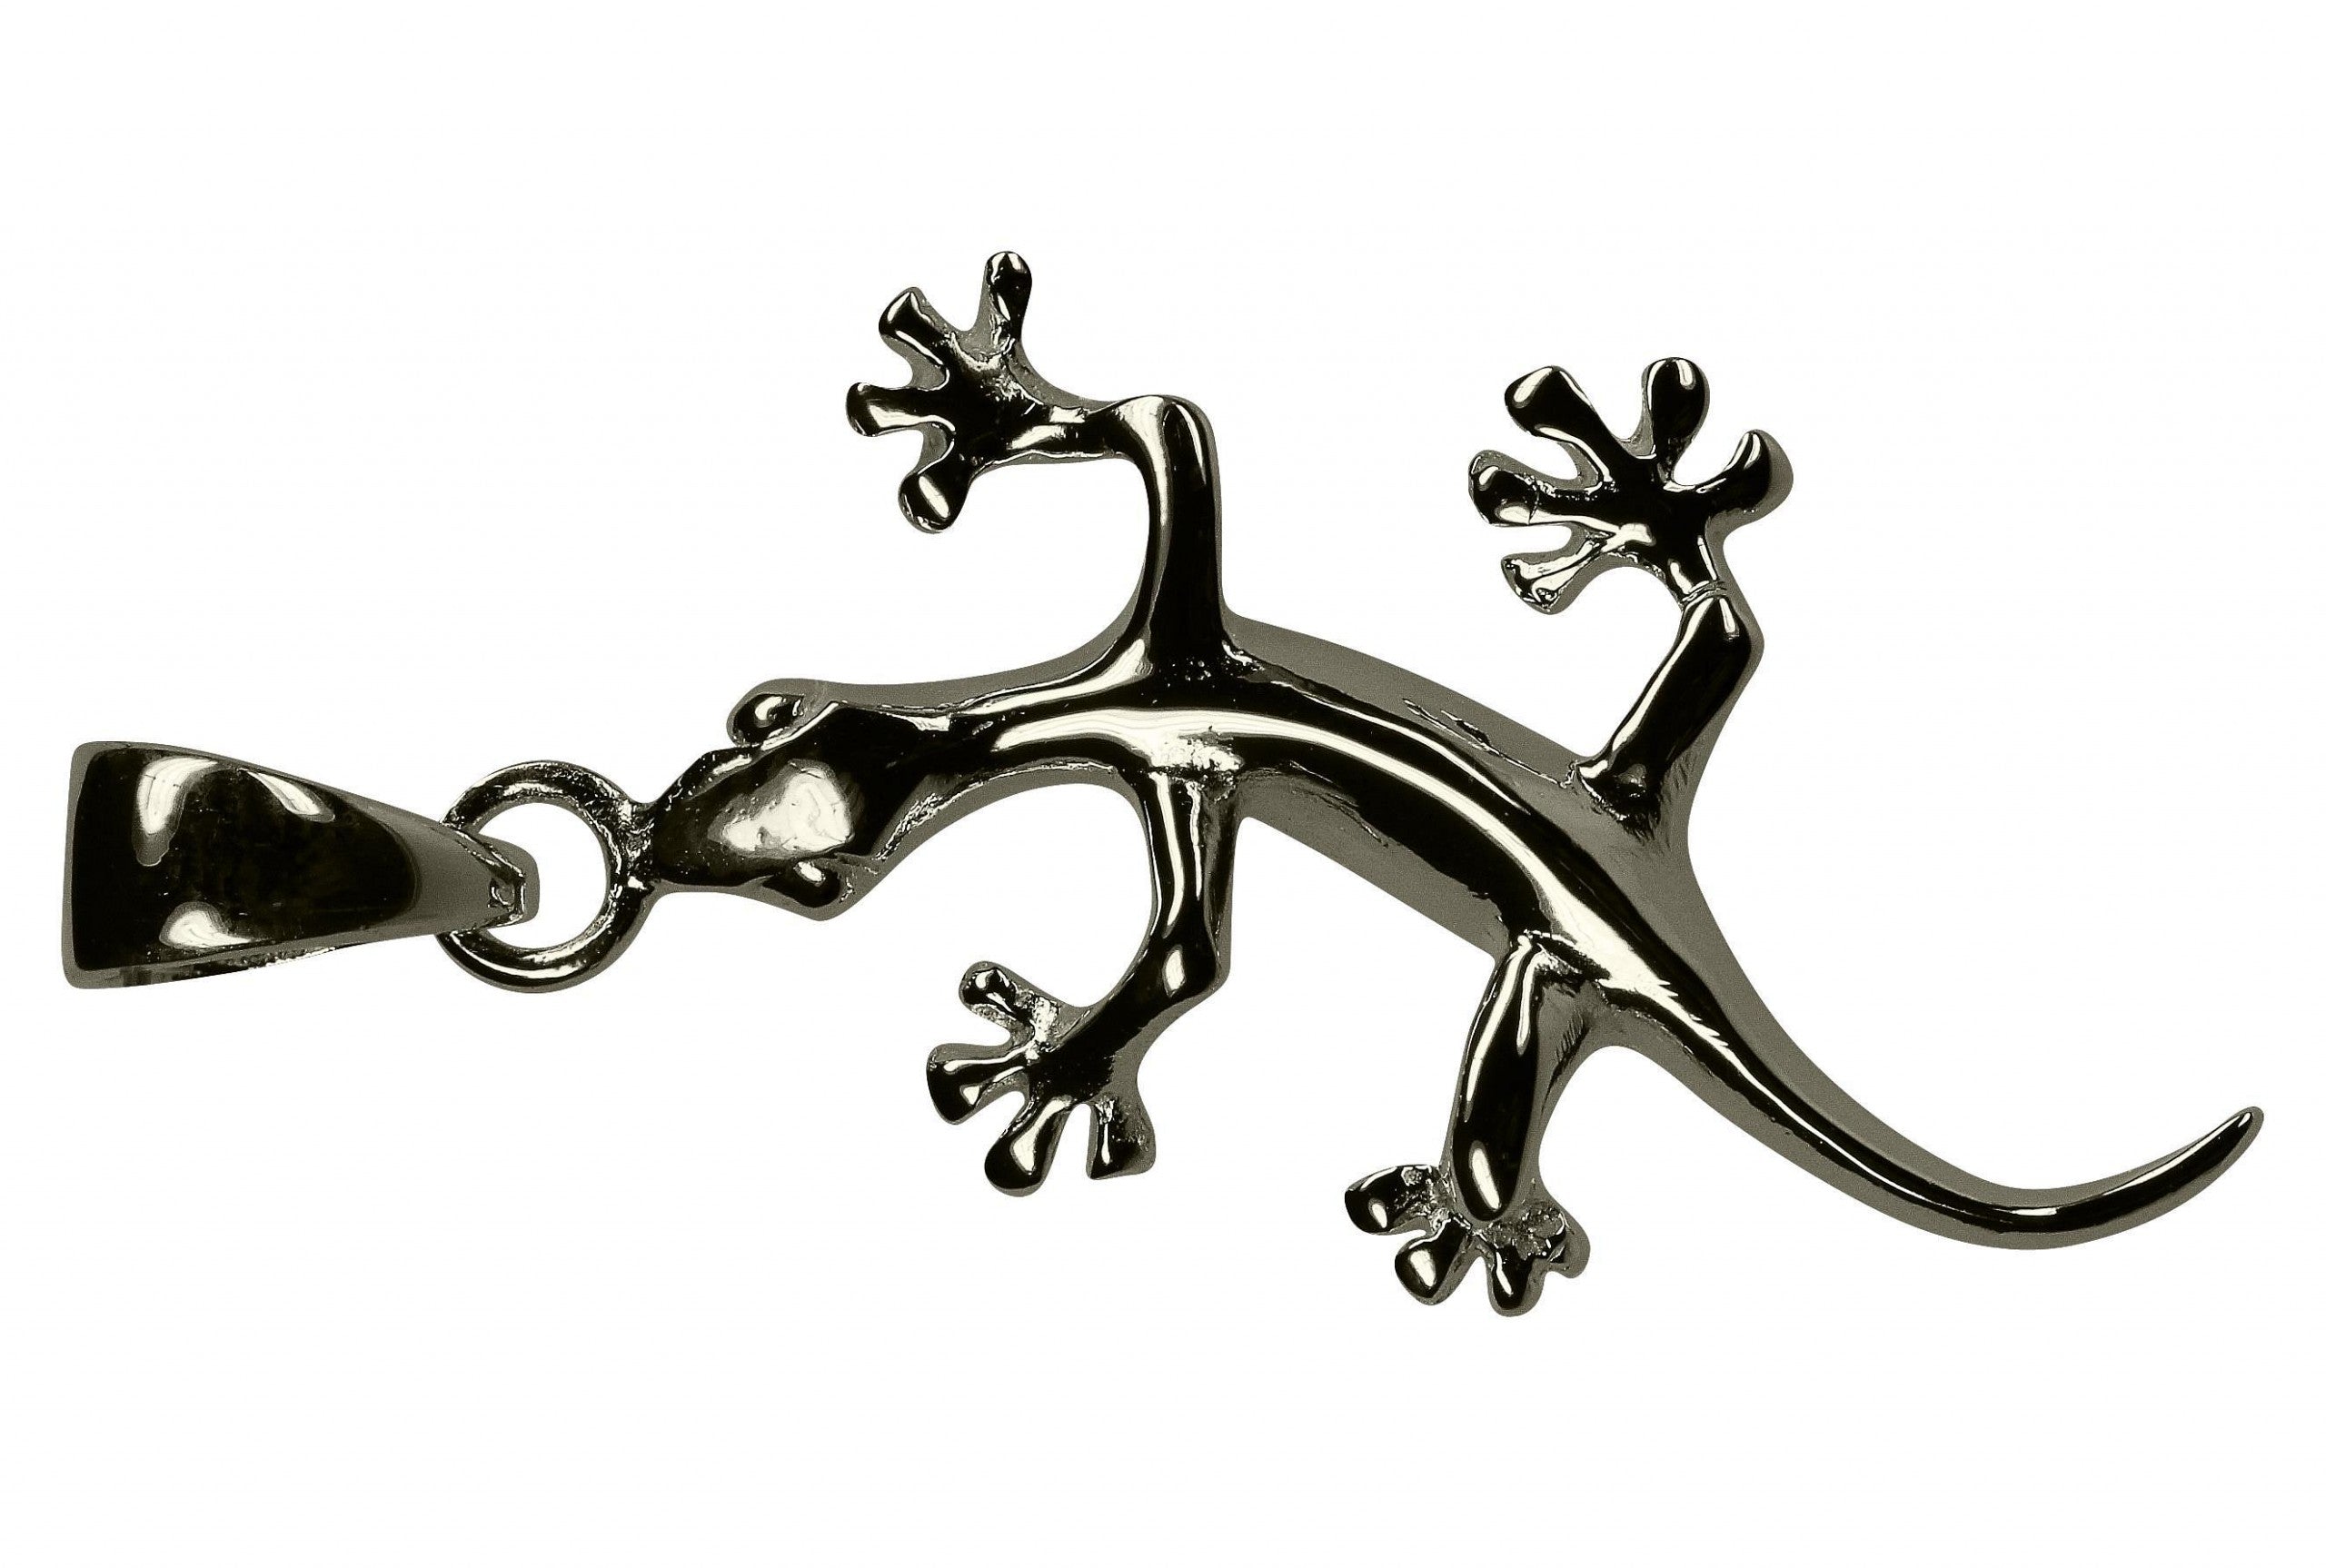 Fein modellierter Anhänger aus Silber in Form eines Geckos mit glänzender Oberfläche und einer Öse zum Fädeln am Kopf.